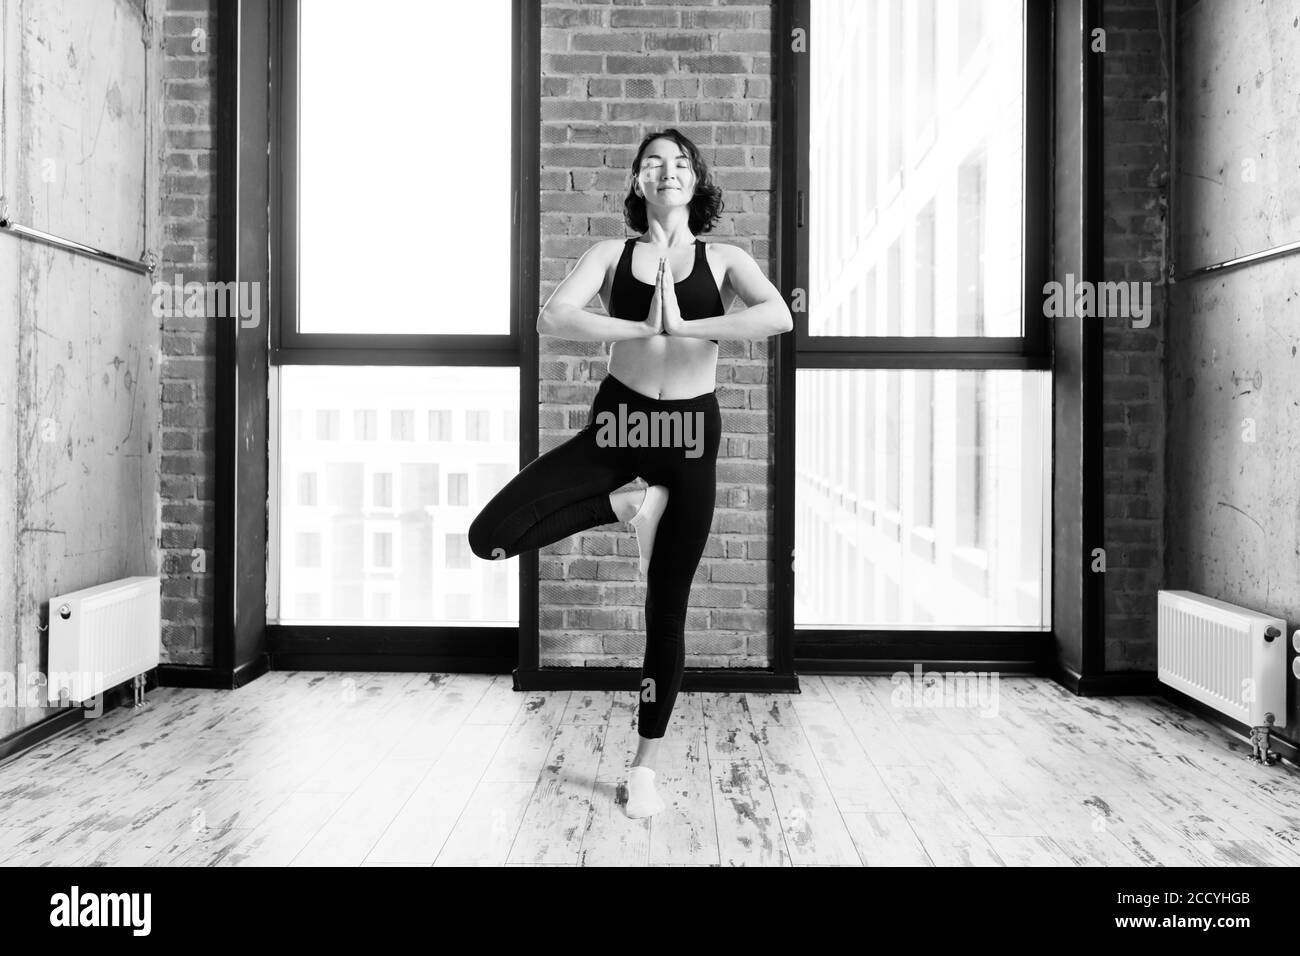 Fröhliche motivierte Frau steht auf einem Bein und praktiziert Yoga. Schwarz-weiß Foto.Motivation und Gesundheitsversorgung Stockfoto